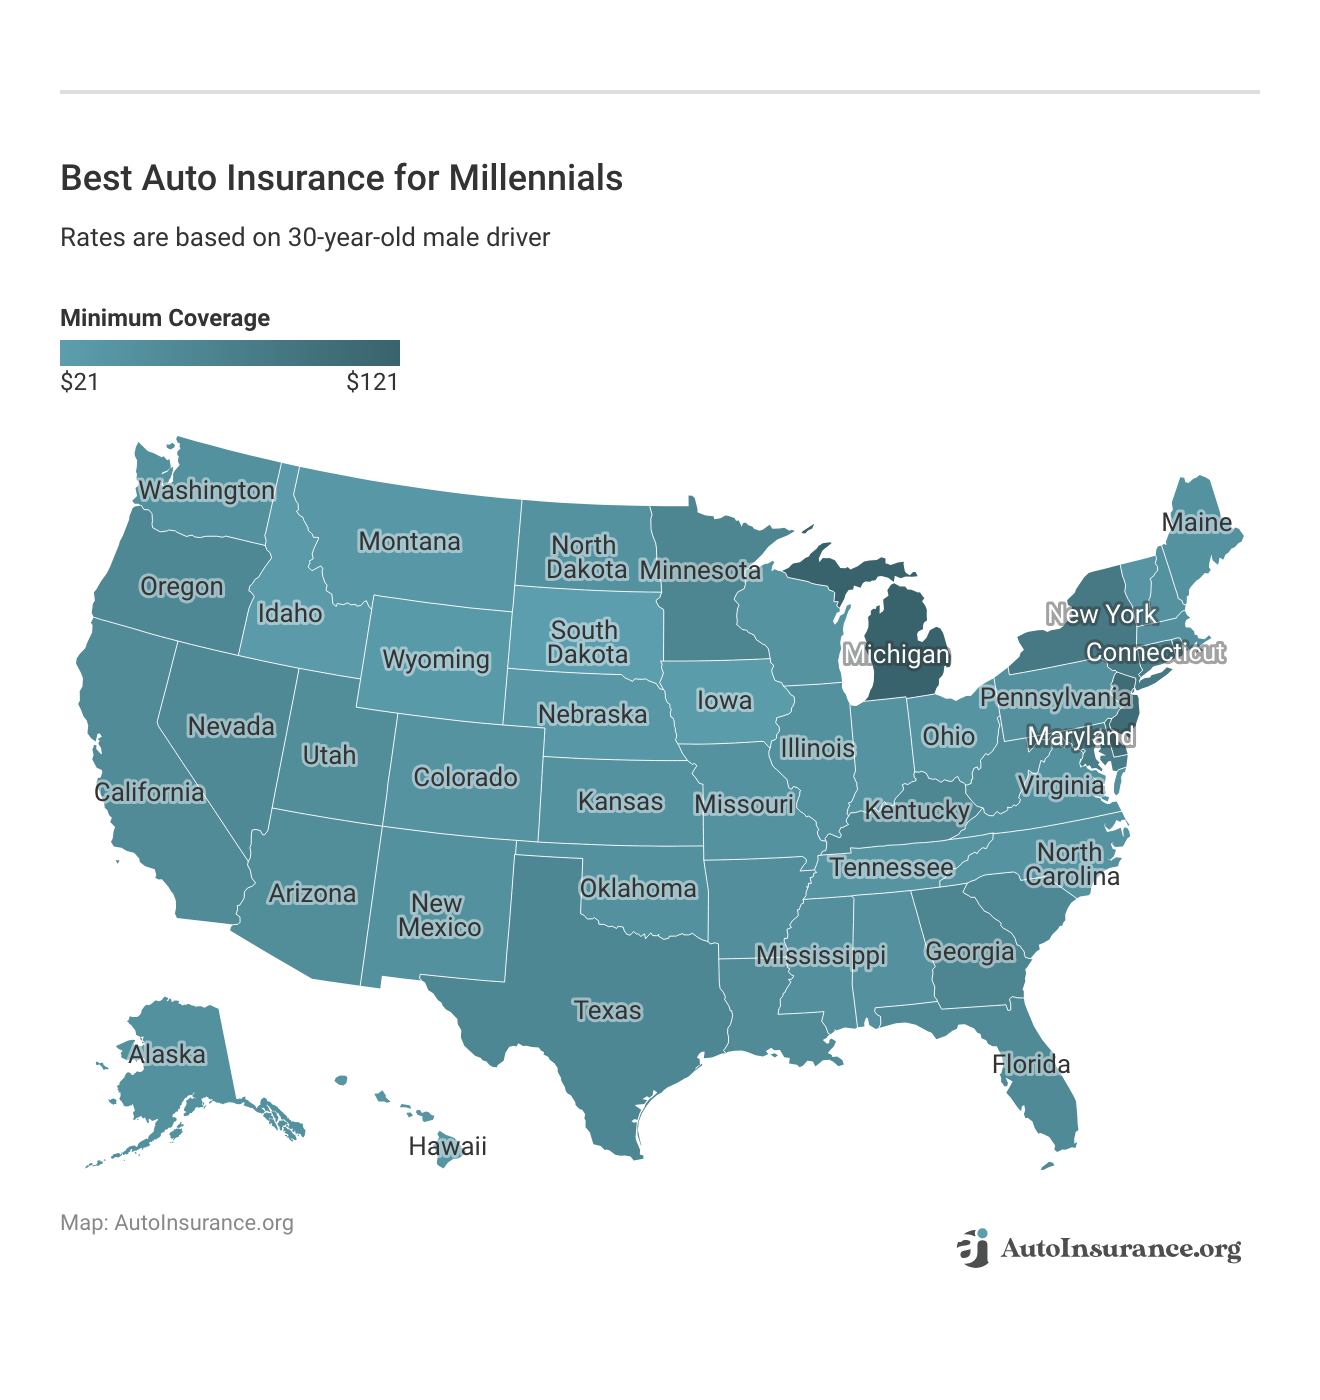 <h3>Best Auto Insurance for Millennials</h3>